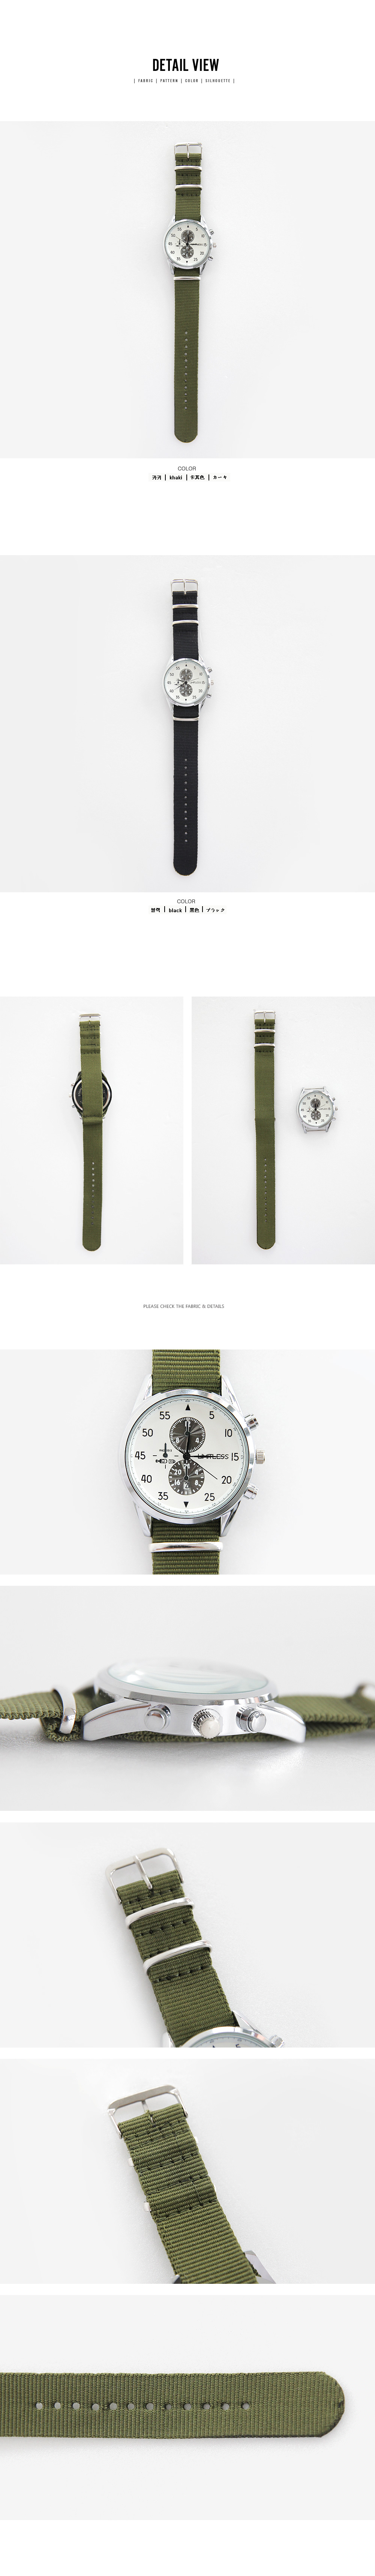 ナイロンベルトトリプルタイム腕時計・全2色 | 詳細画像3